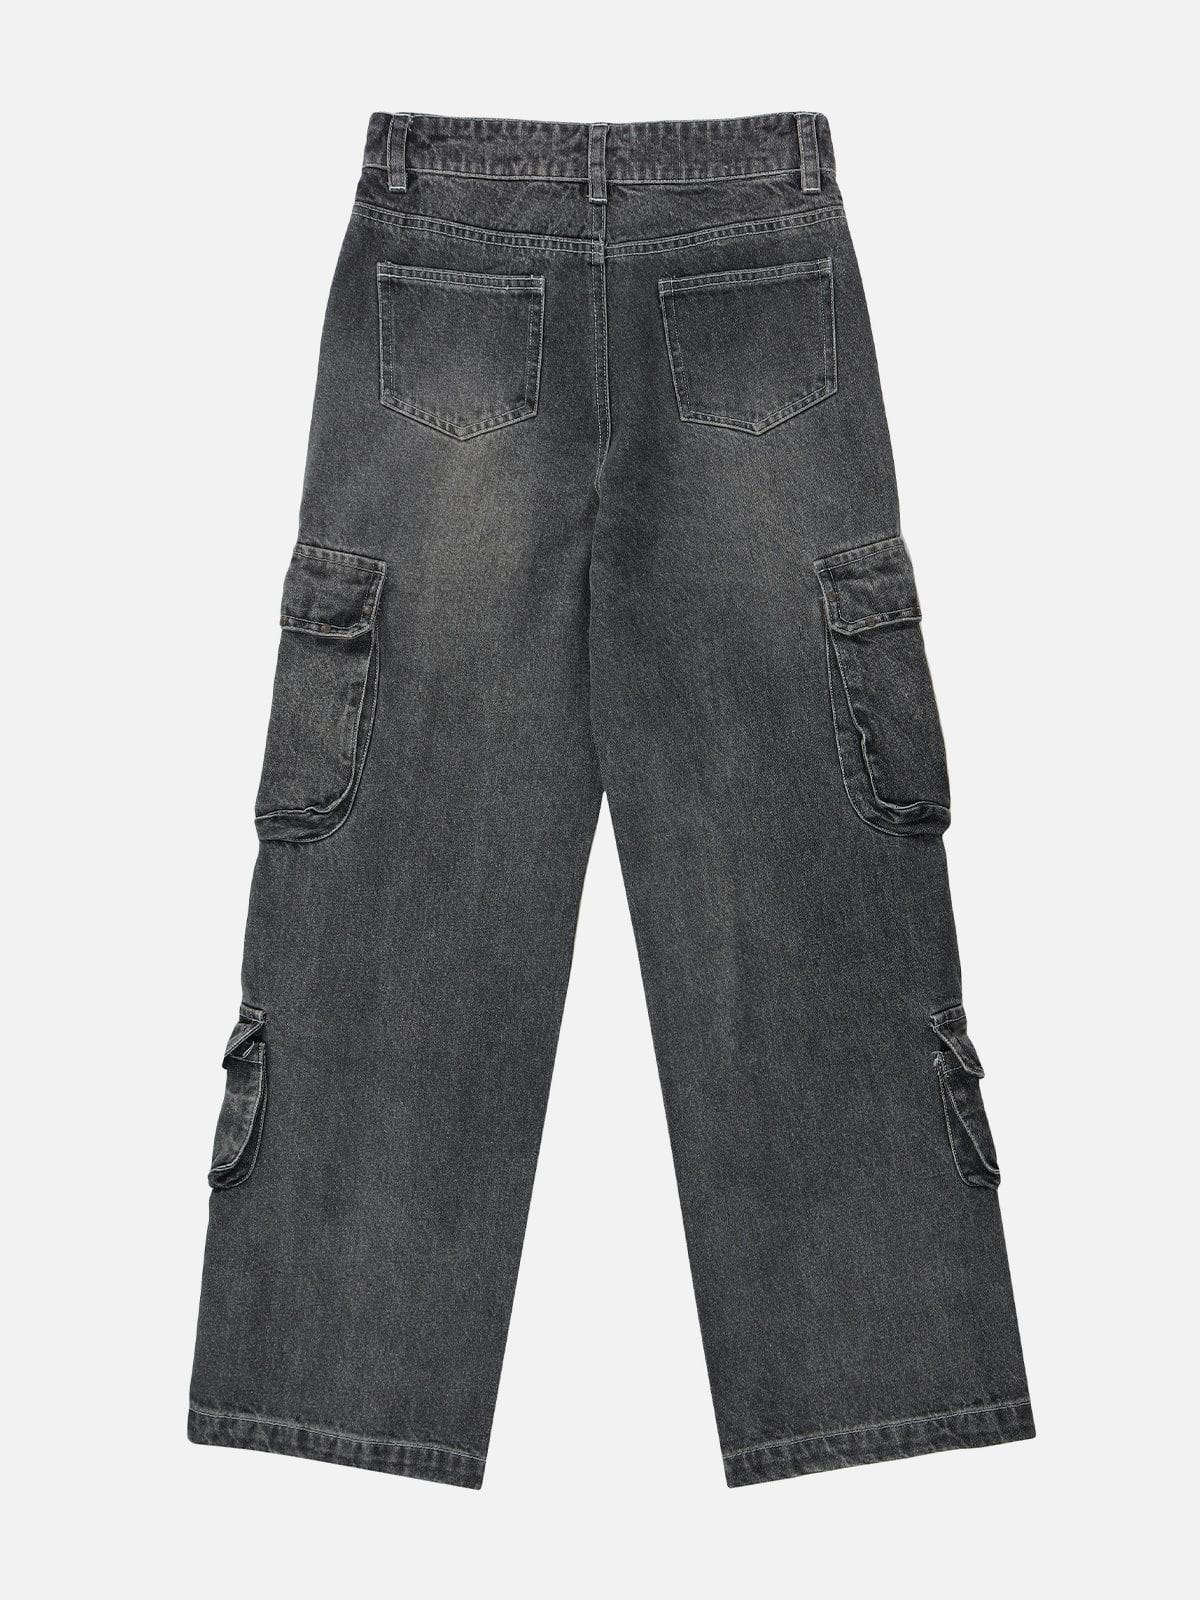 Eprezzy® - Multi-pocket Washed Design Jeans Streetwear Fashion - eprezzy.com